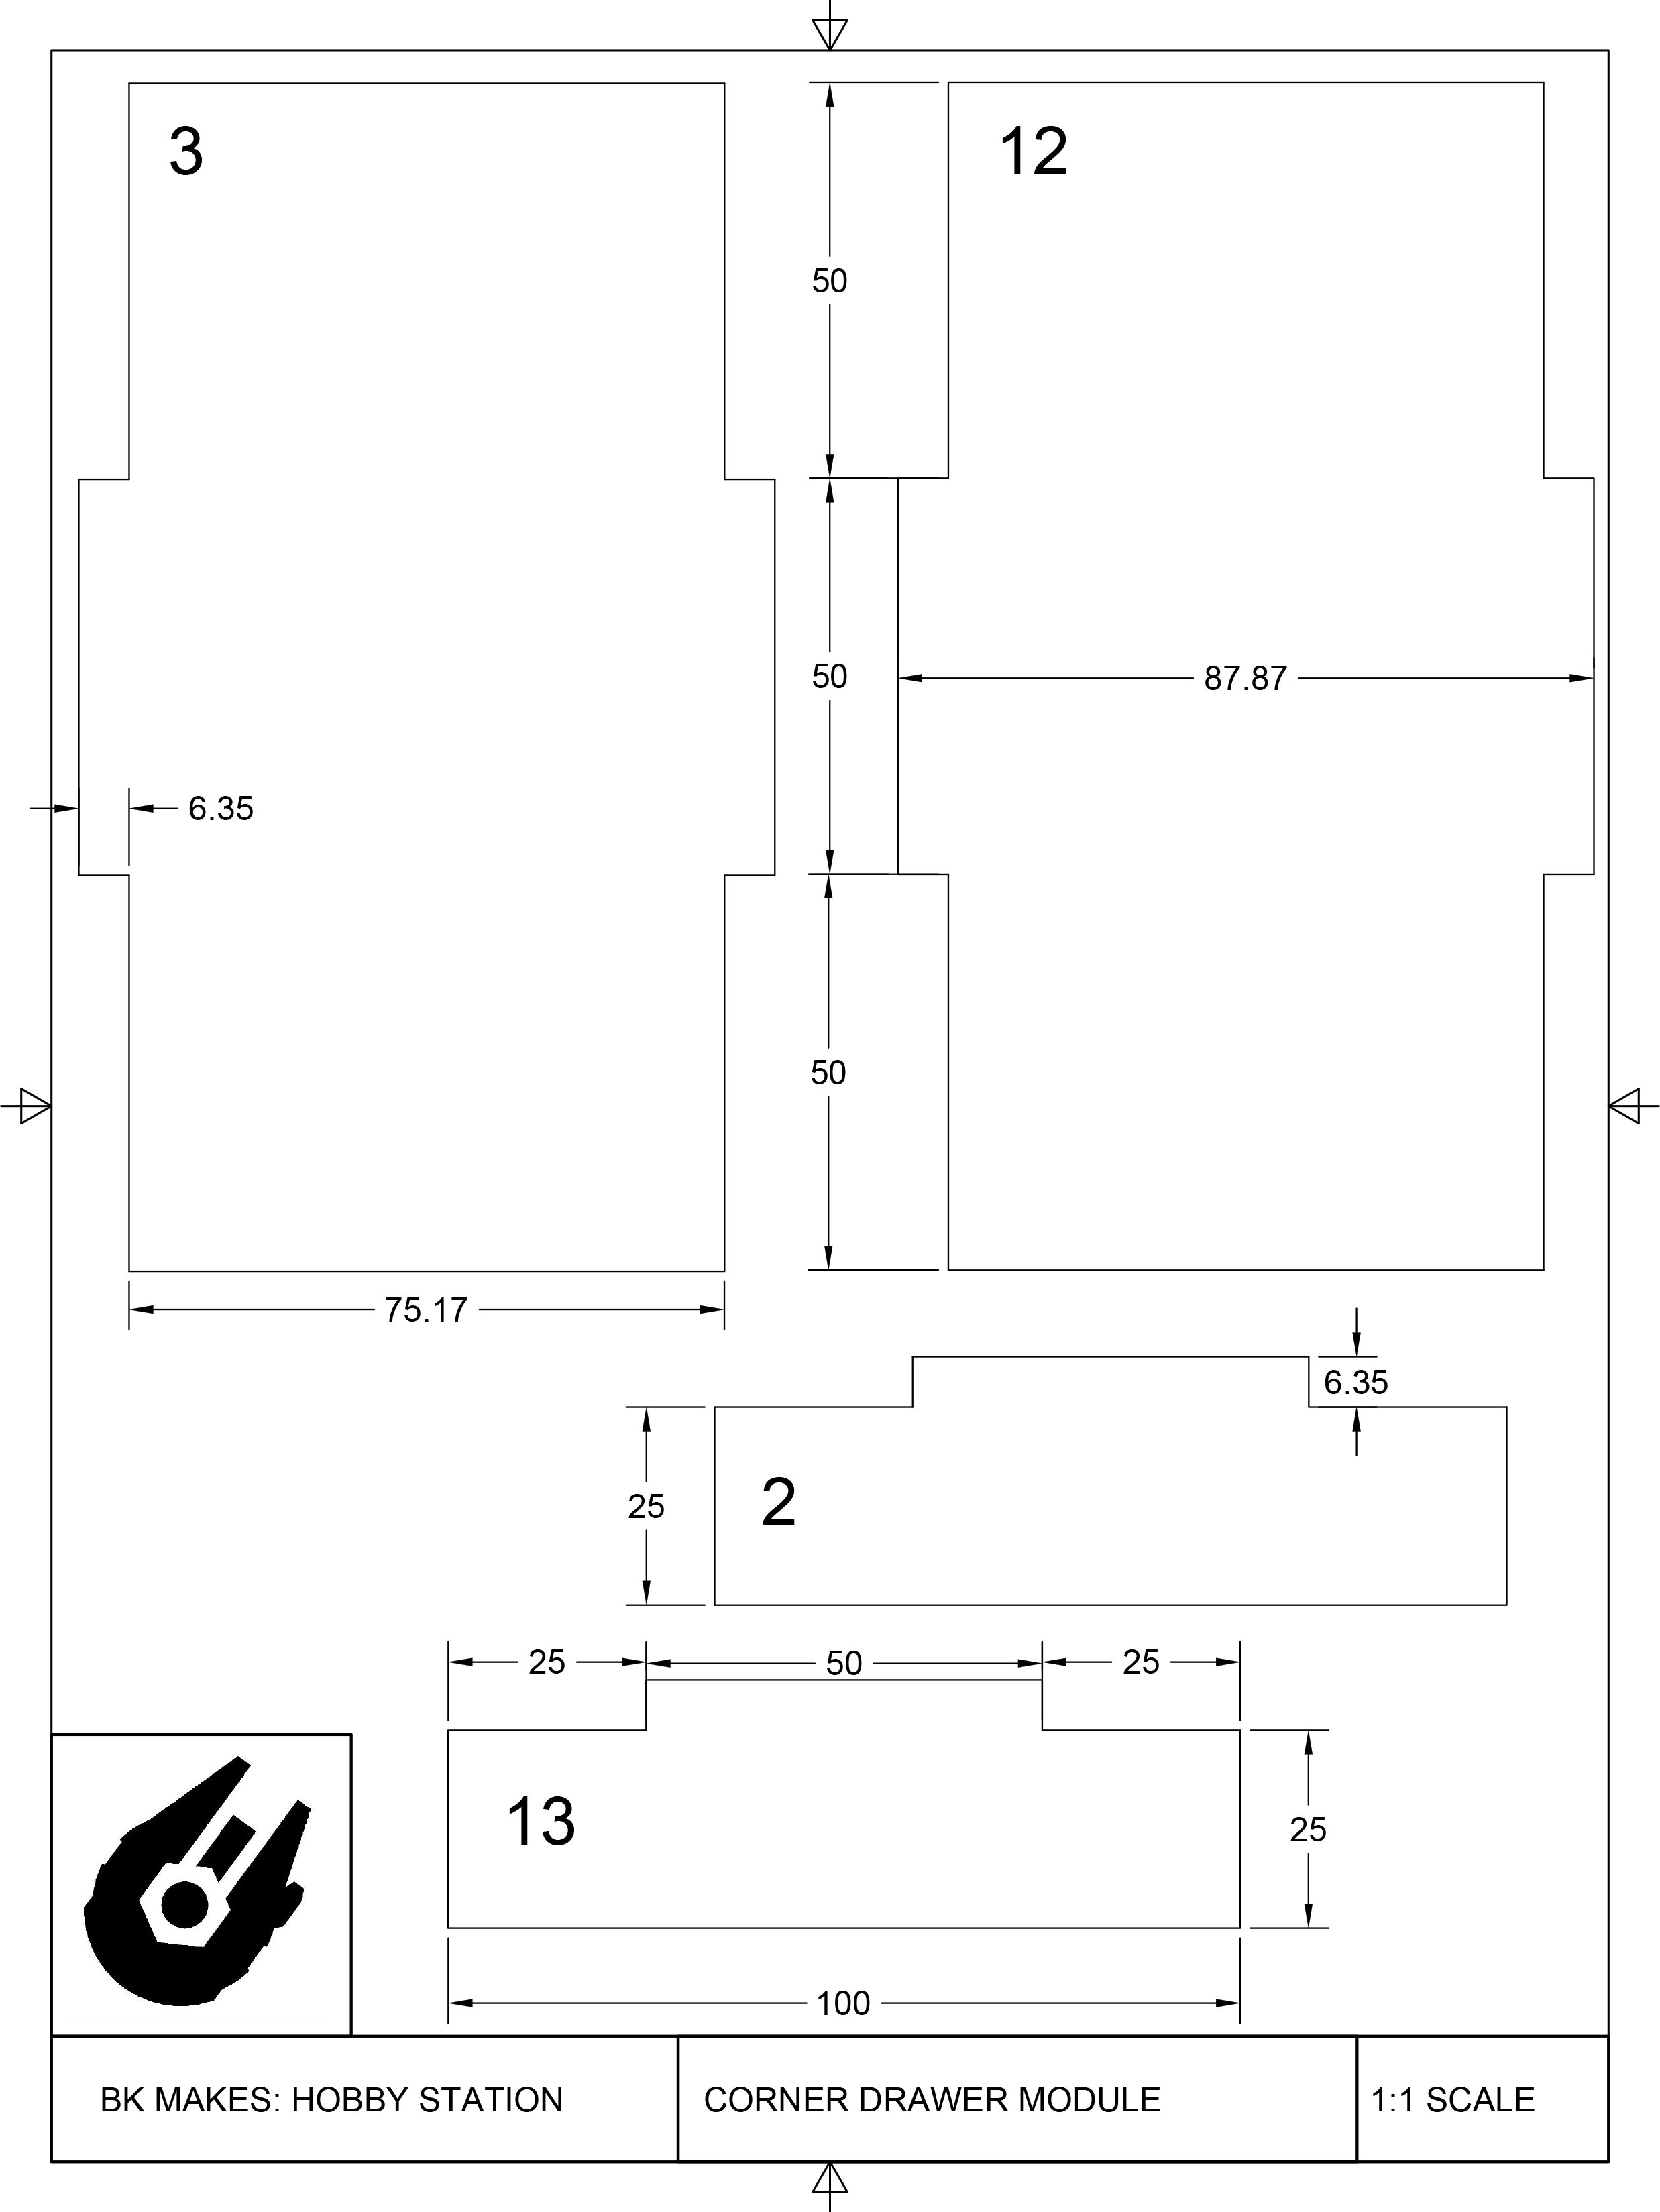 Corner Drawer Module Templates-1.jpg